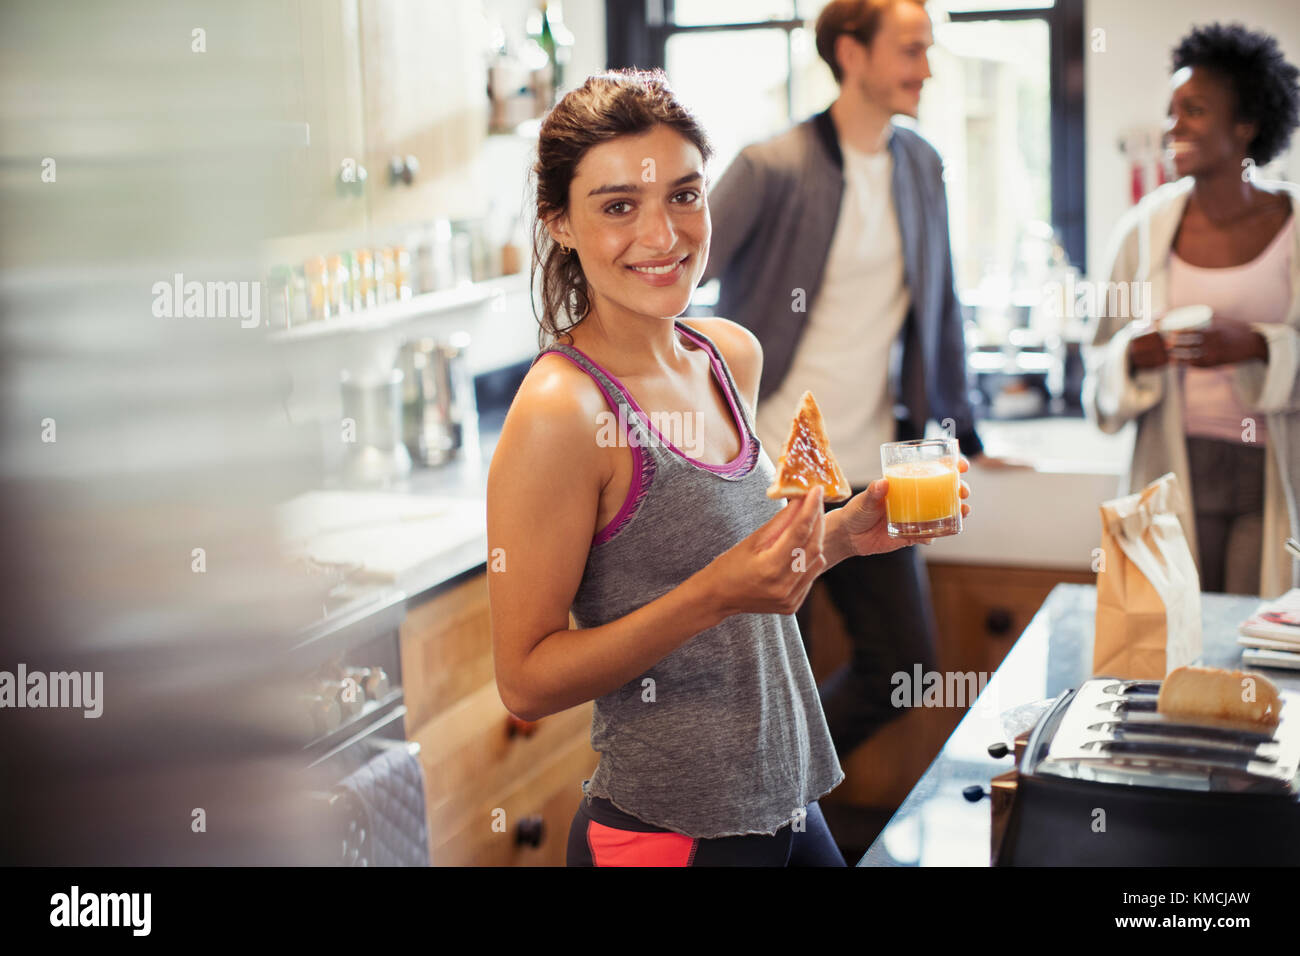 Portrait souriante jeune femme mangeant du pain grillé et buvant du jus d'orange dans la cuisine Banque D'Images